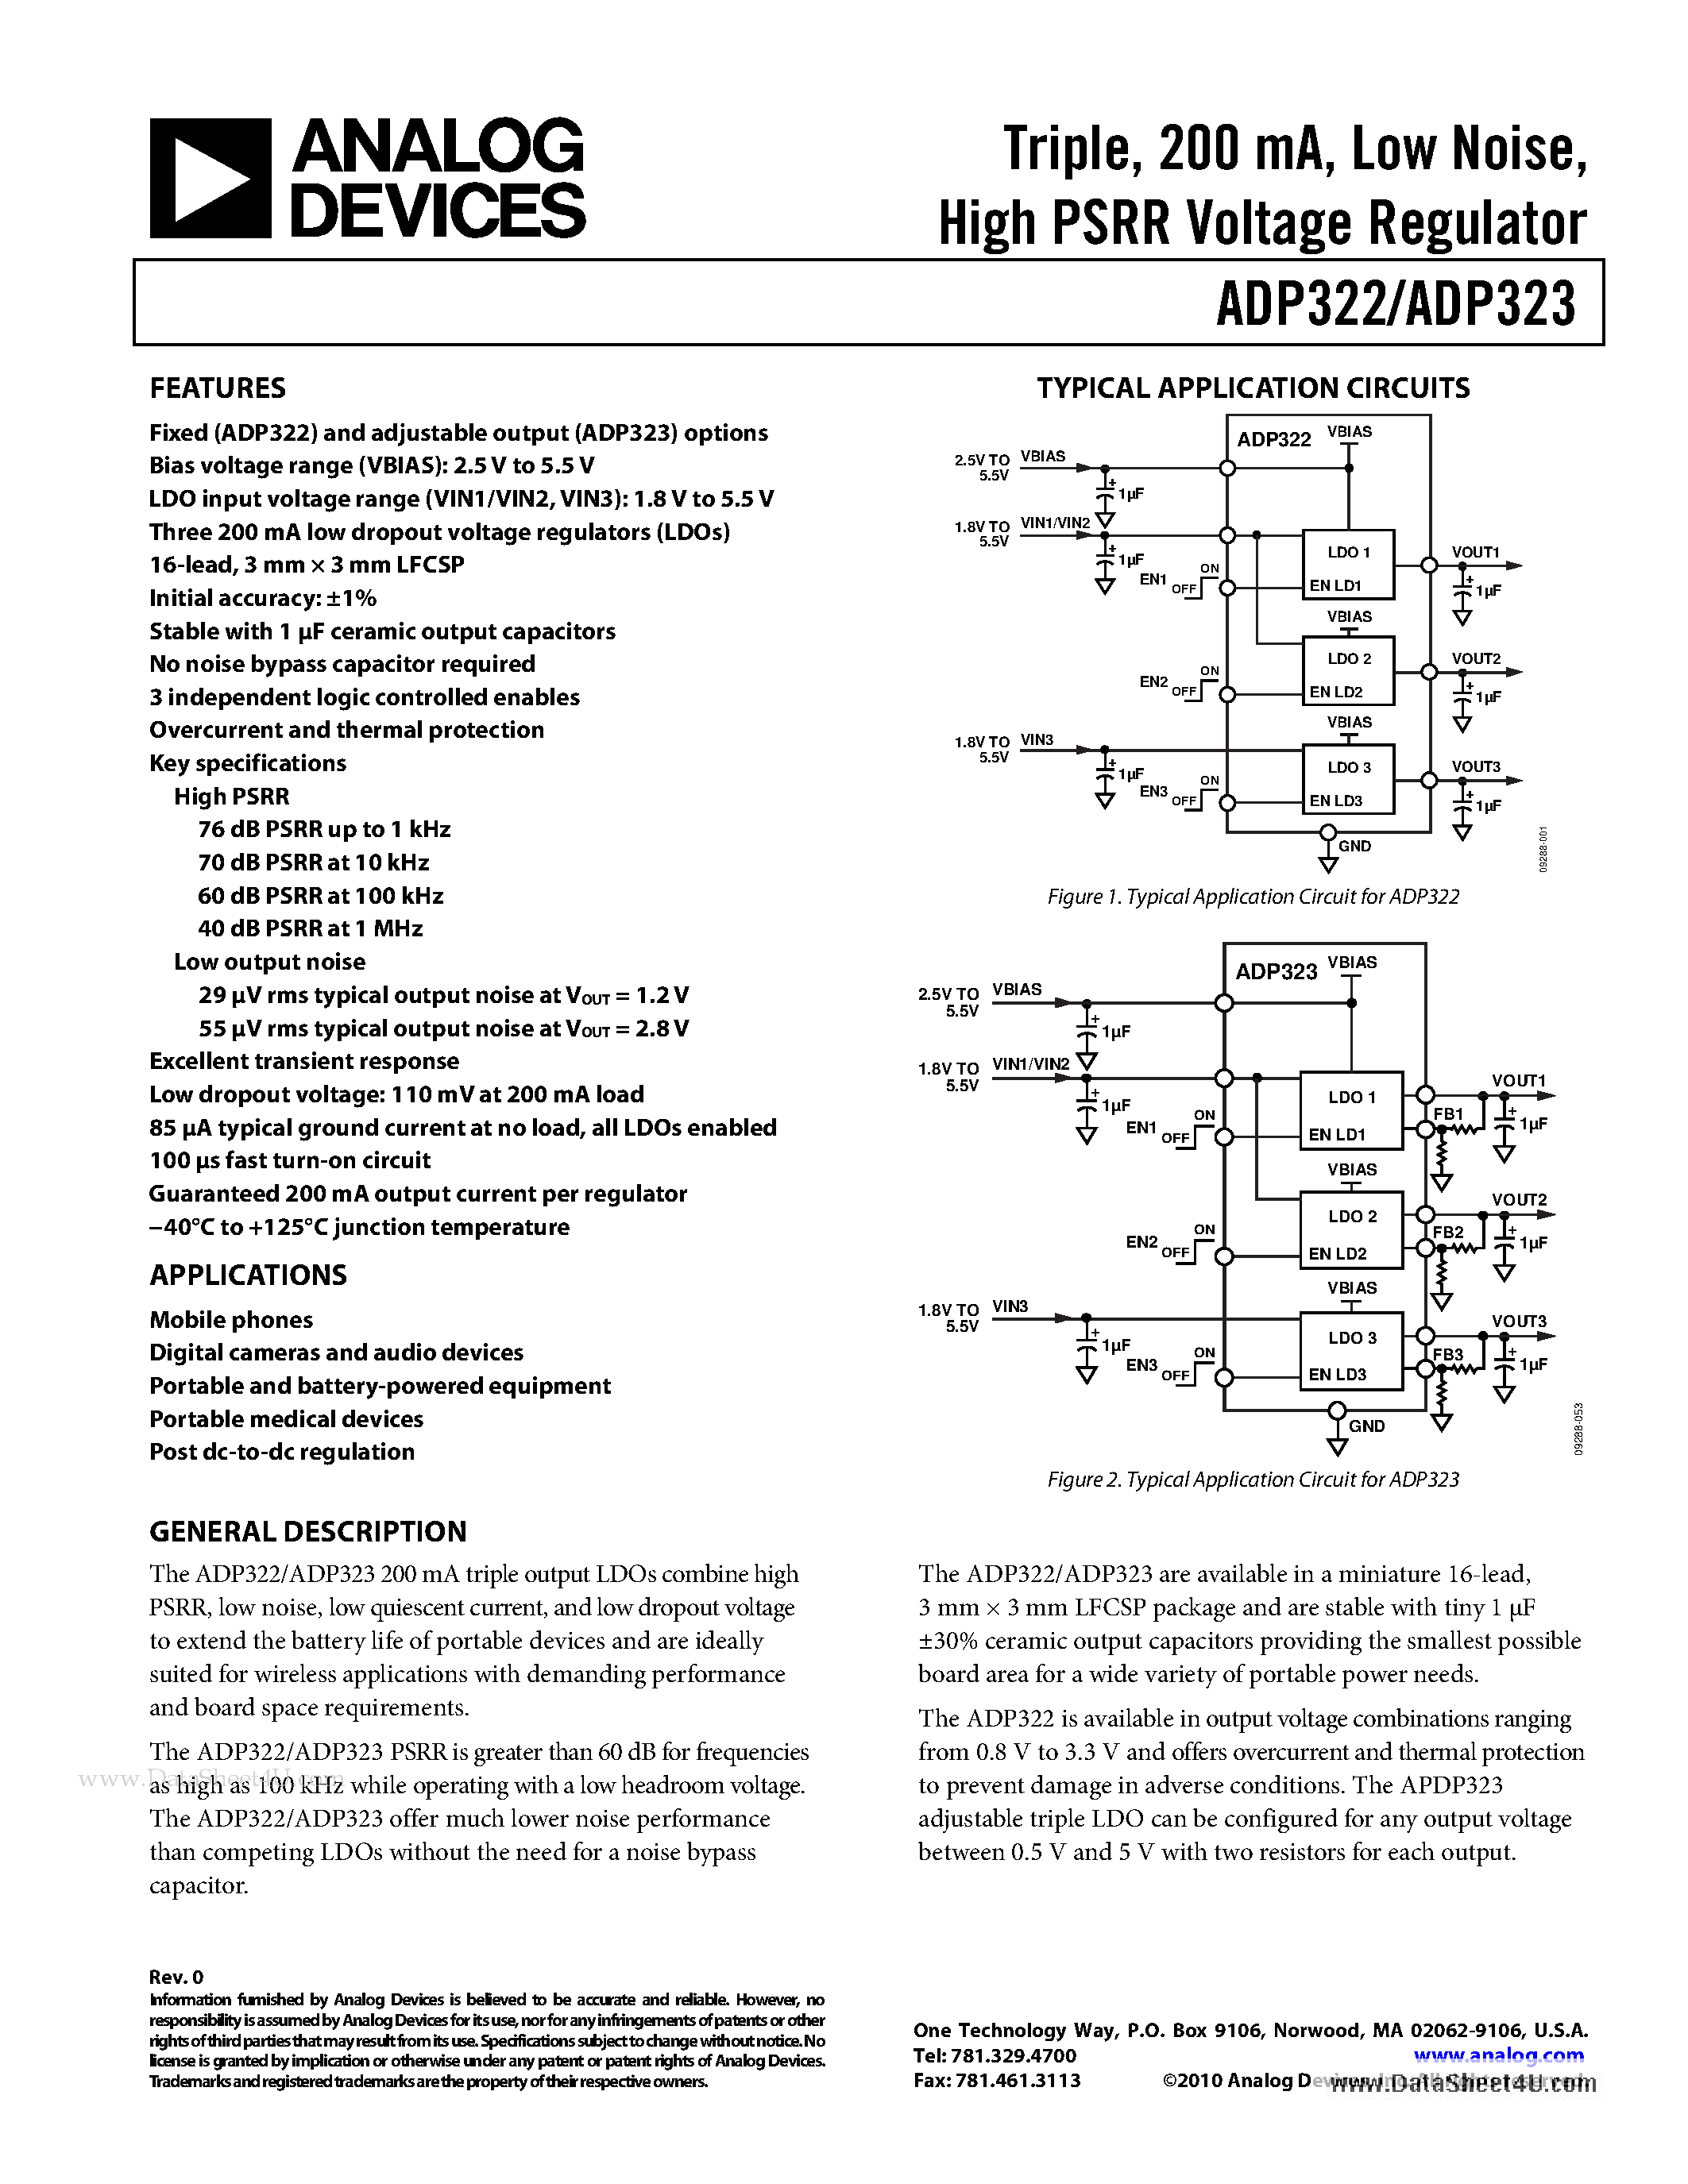 Даташит ADP322 - (ADP322 / ADP323) High PSRR Voltage Regulator страница 1